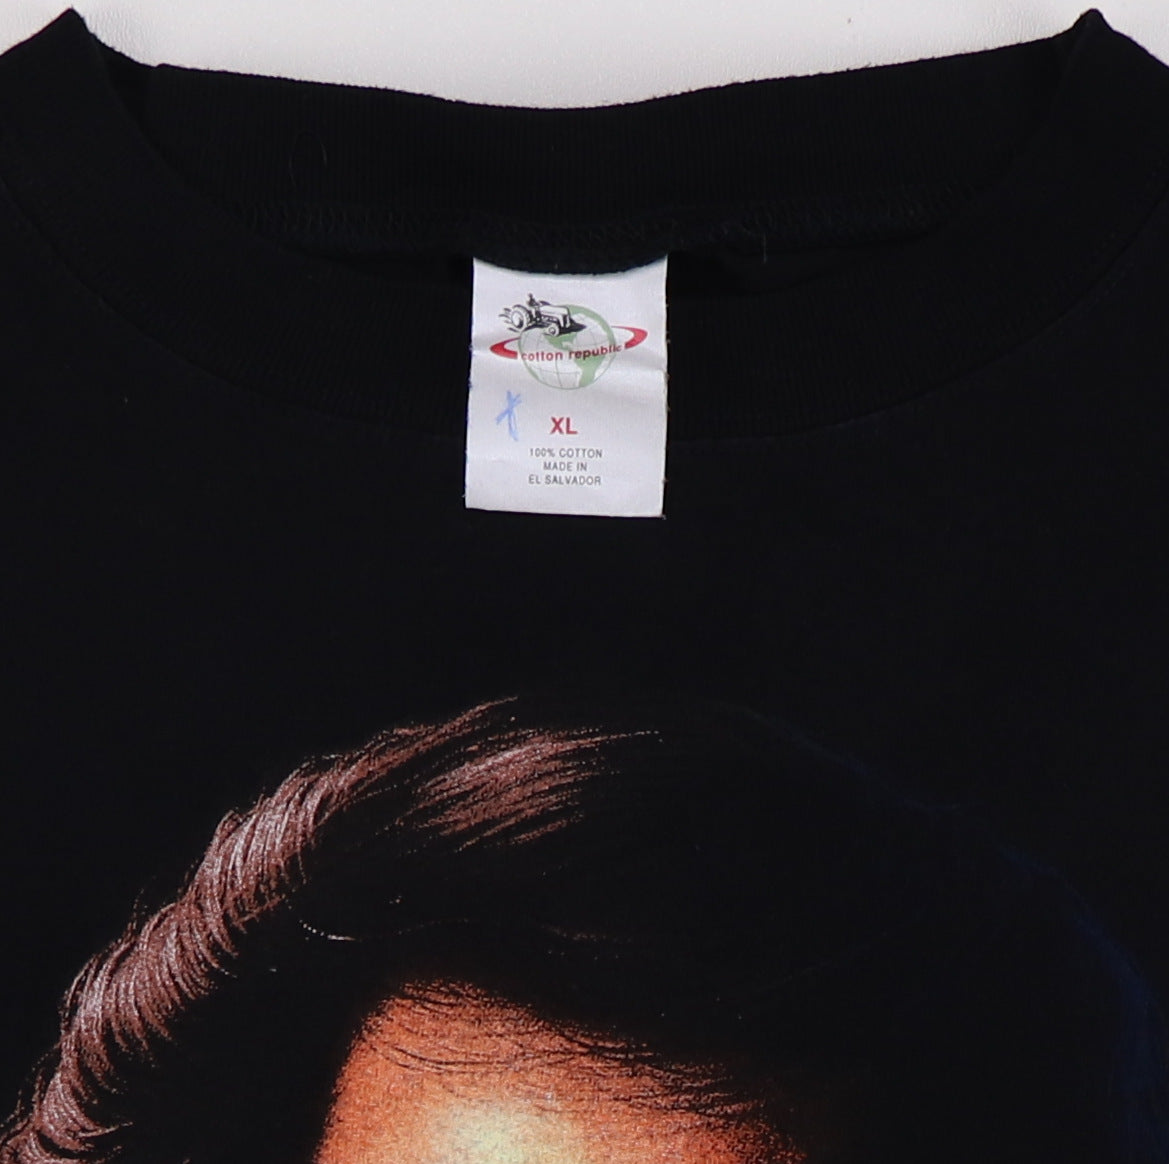 Vintage Neil Diamond On Tour Concert T-Shirt 1980s S – Black Shag Vintage